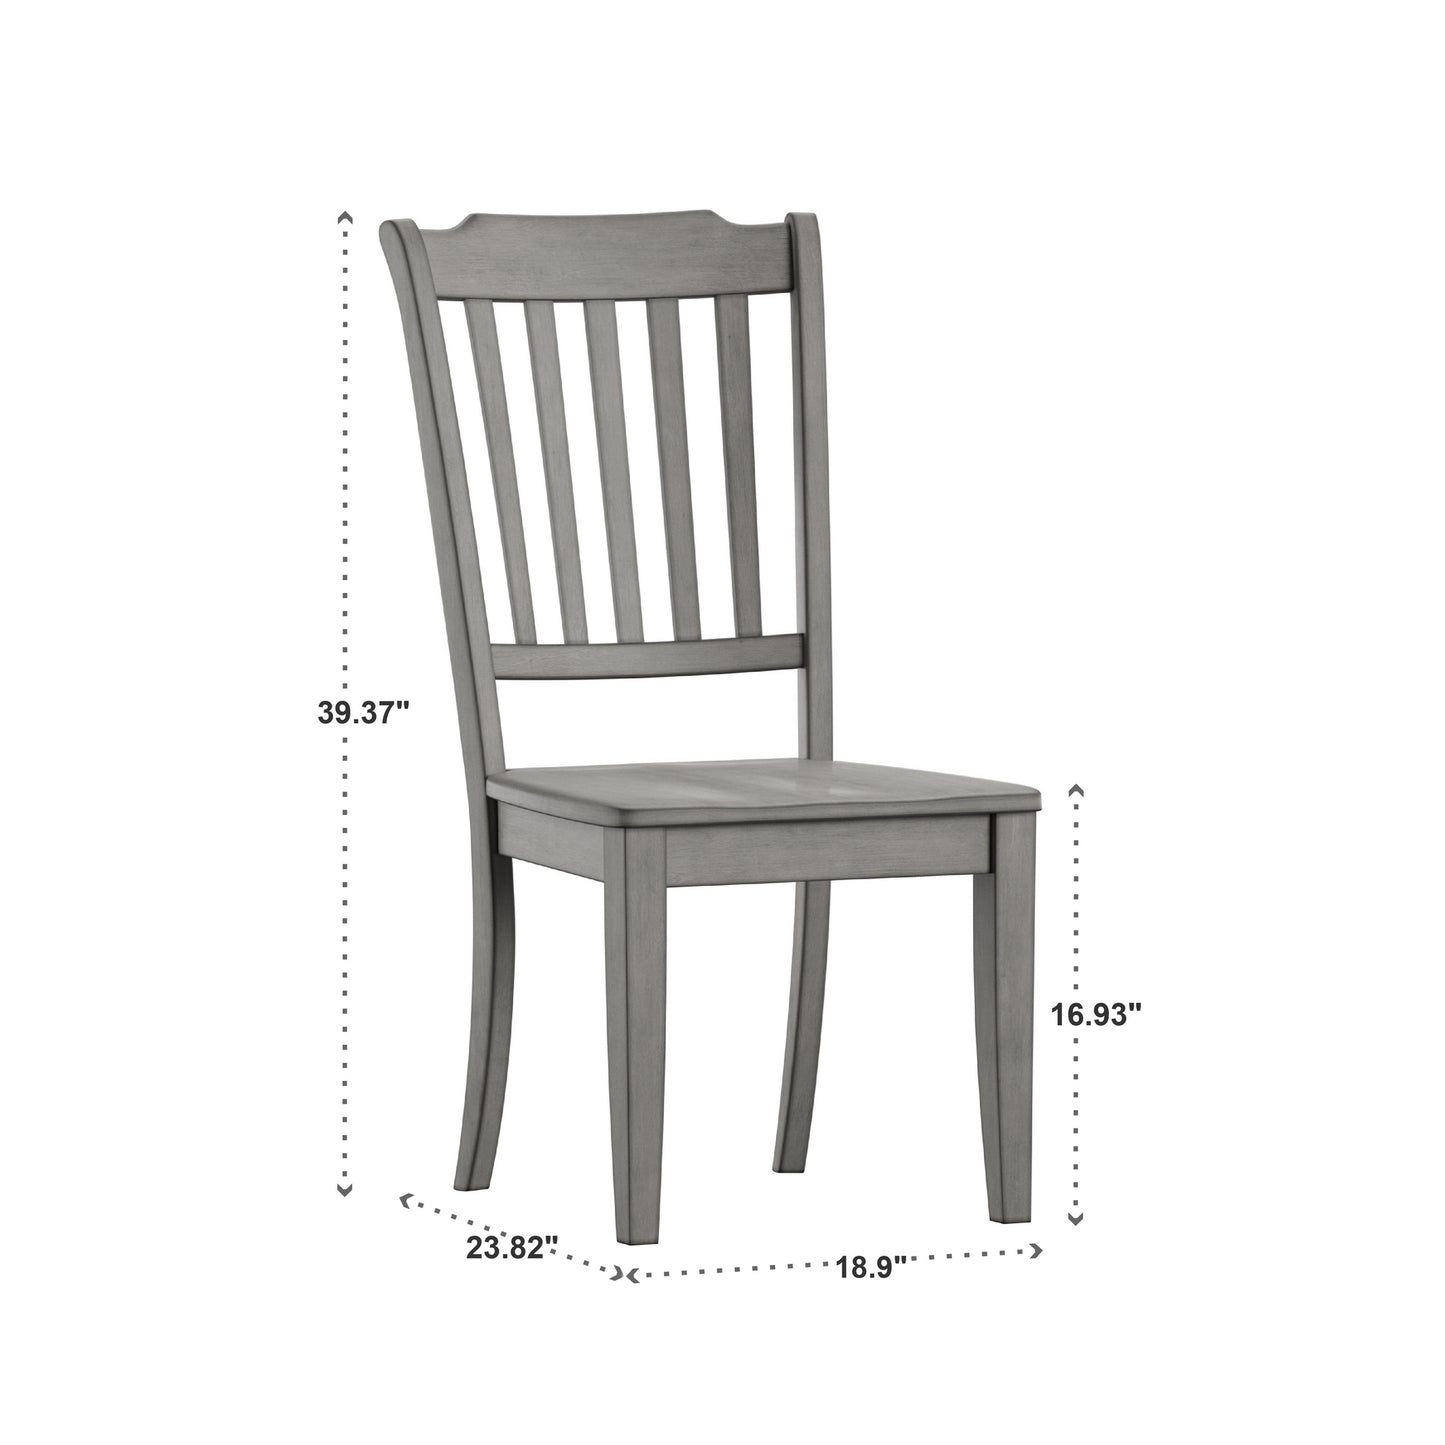 Slat Back Wood Dining Chairs (Set of 2) - Antique Grey Finish